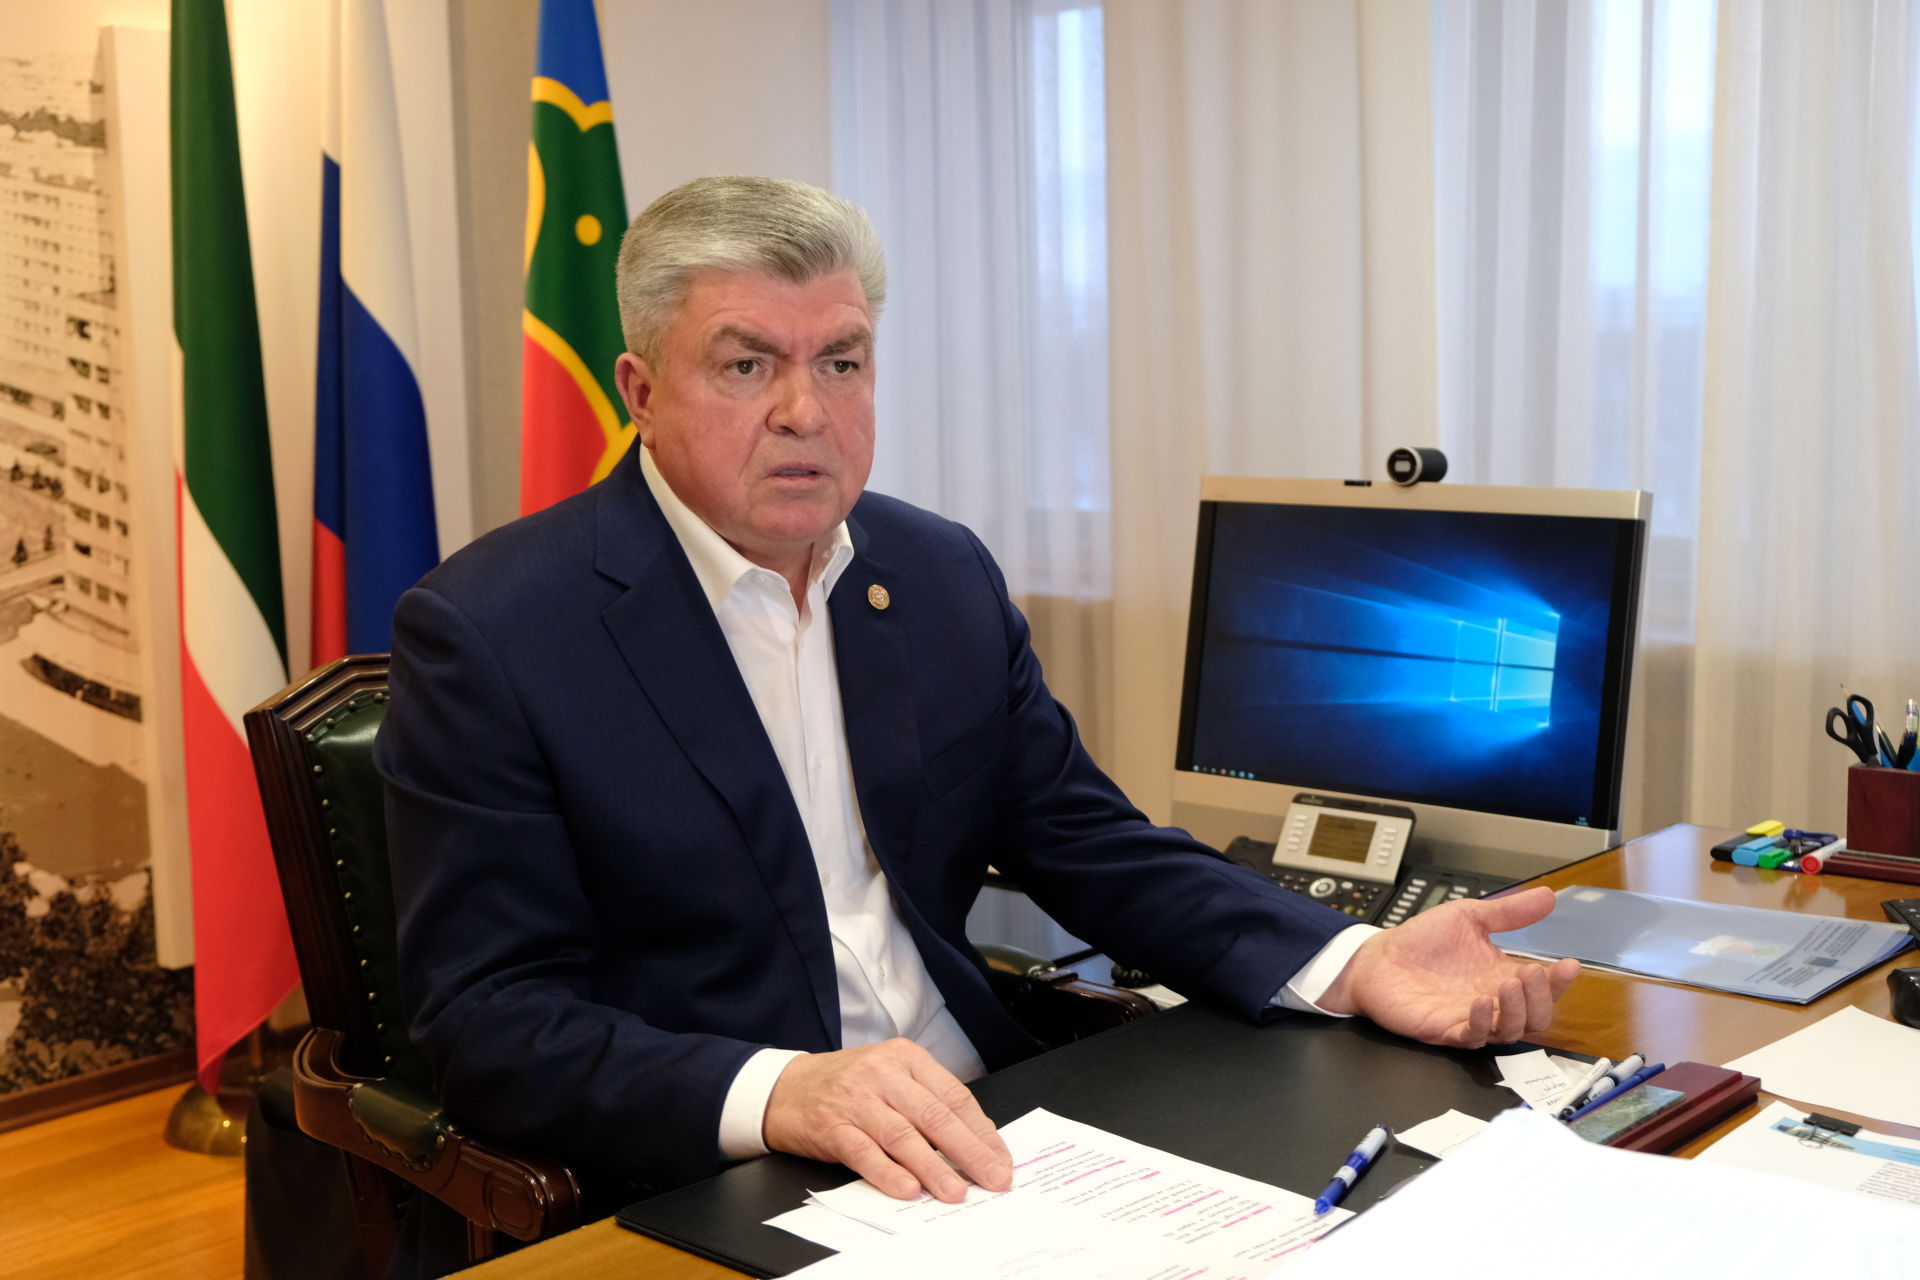 Мэр Челнов обещал регулярно проводить прямые эфиры